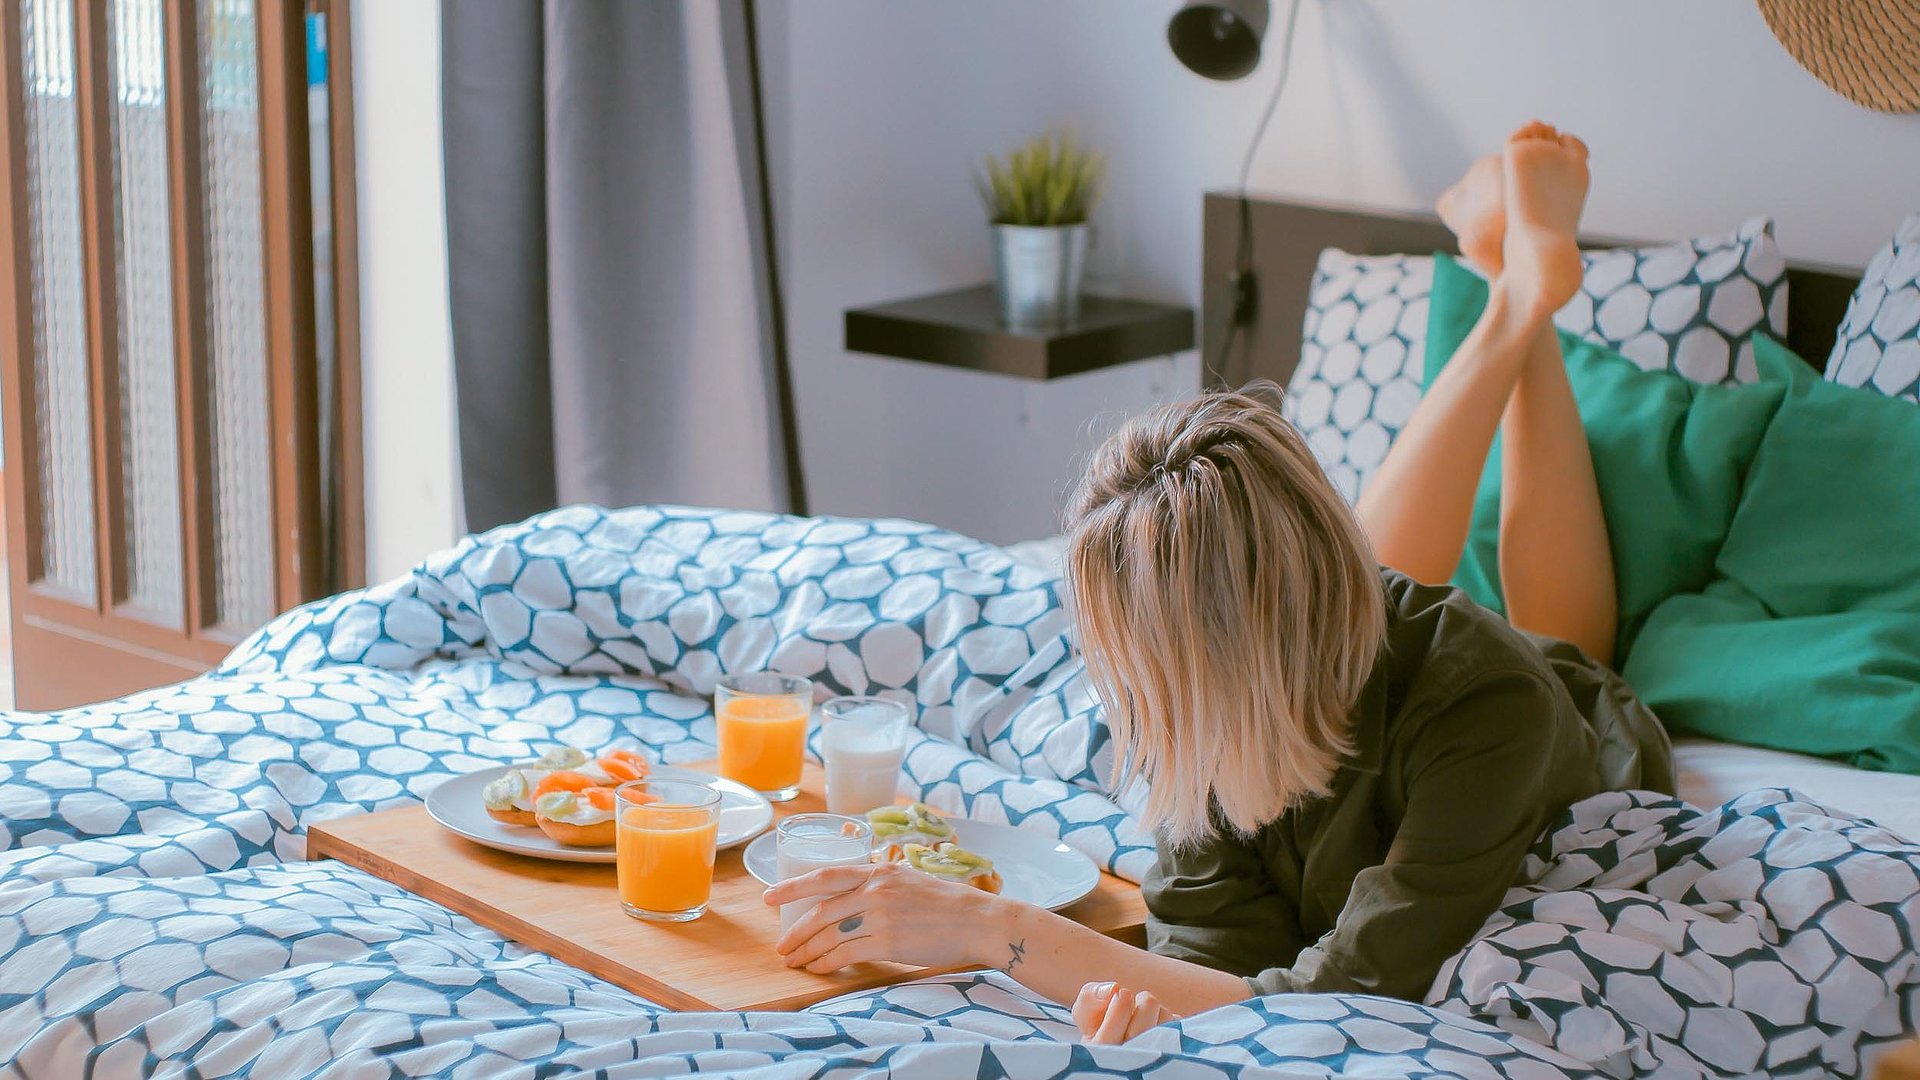 Pauschalangebote für Unterkünfte zu Wochentagen im Oberallgäu - junge blonde Frau liegt im Bett, vor Ihr eine volle Frühstücksplatte mit O-Saft, Milch und belegten Brötchen